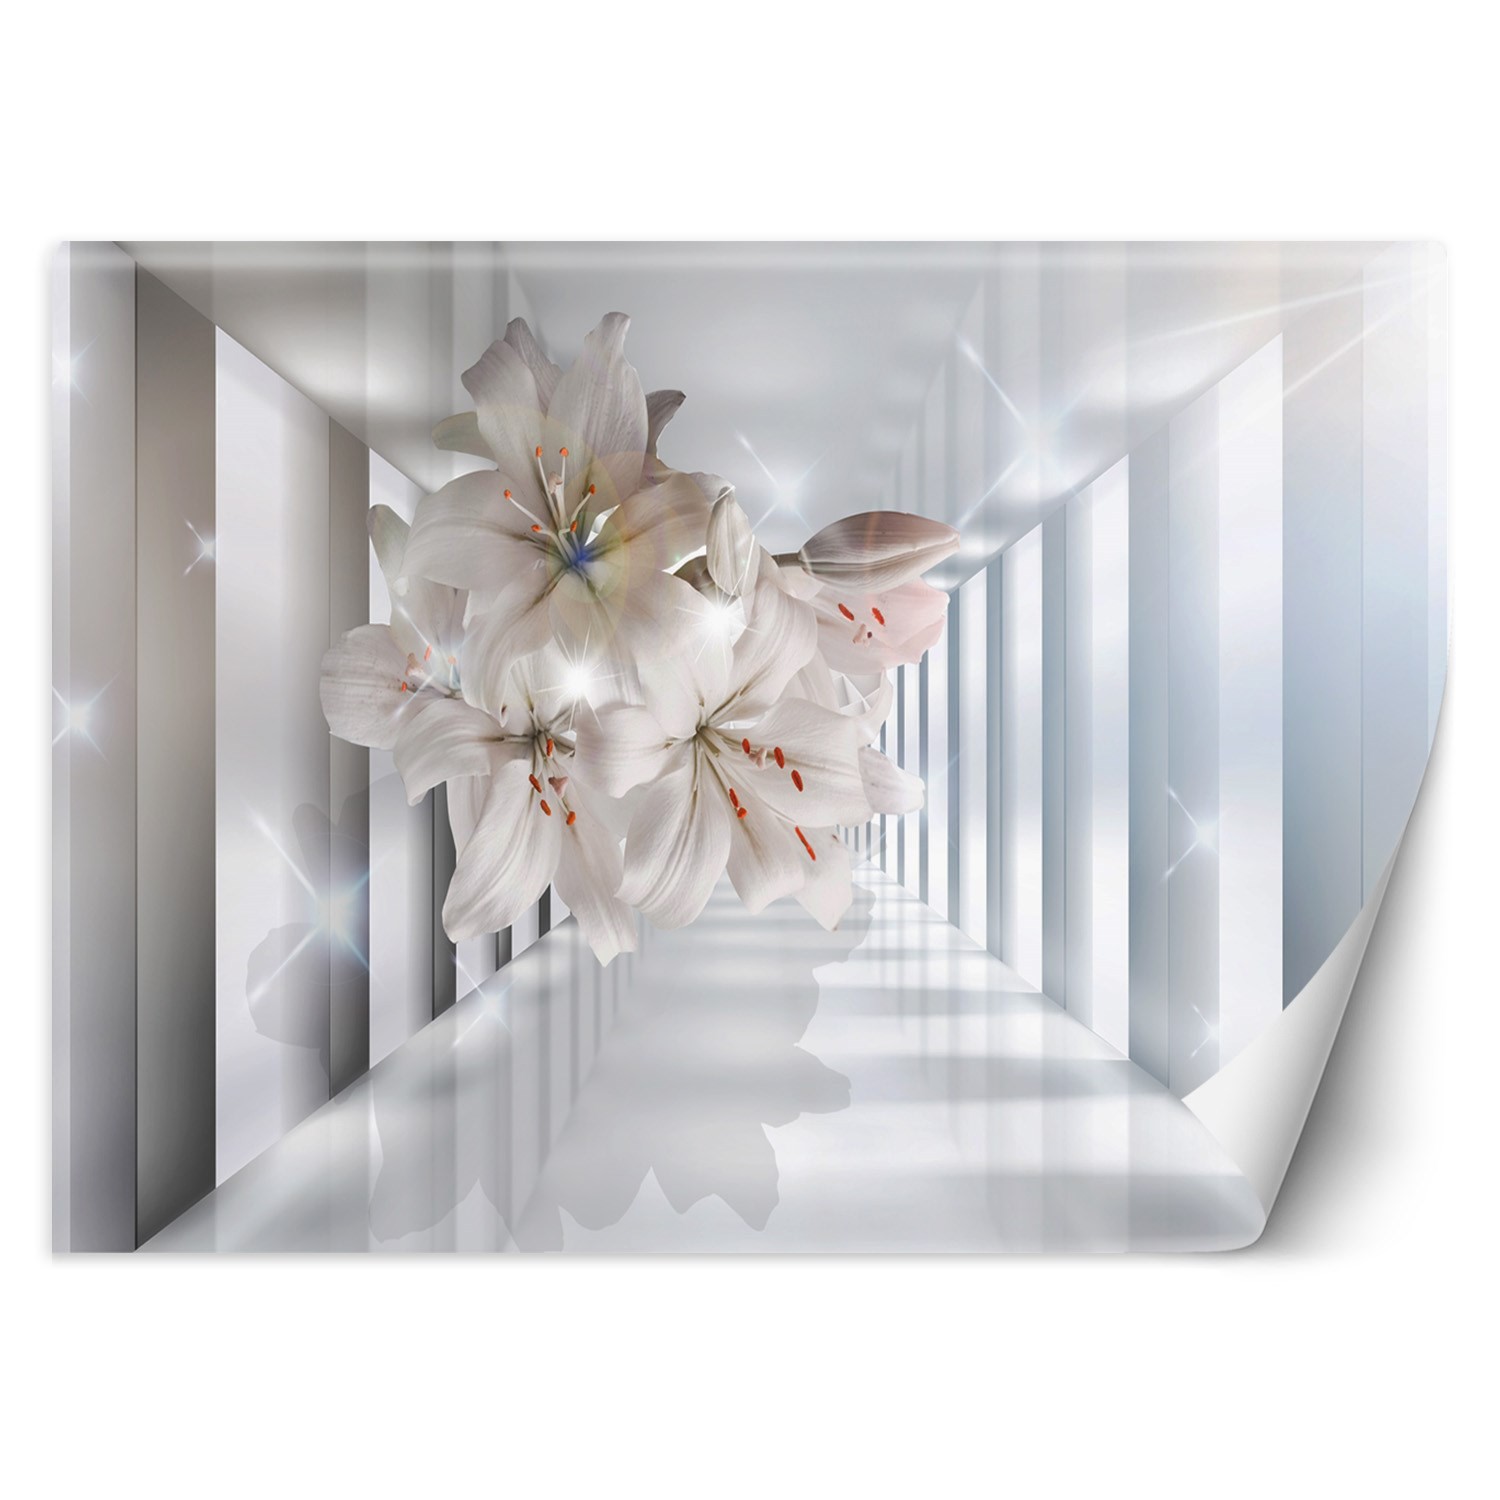 Trend24 – Behang – Bloemen In De Corridor 3D – Behangpapier – Fotobehang 3D – Behang Woonkamer – 400×280 cm – Incl. behanglijm